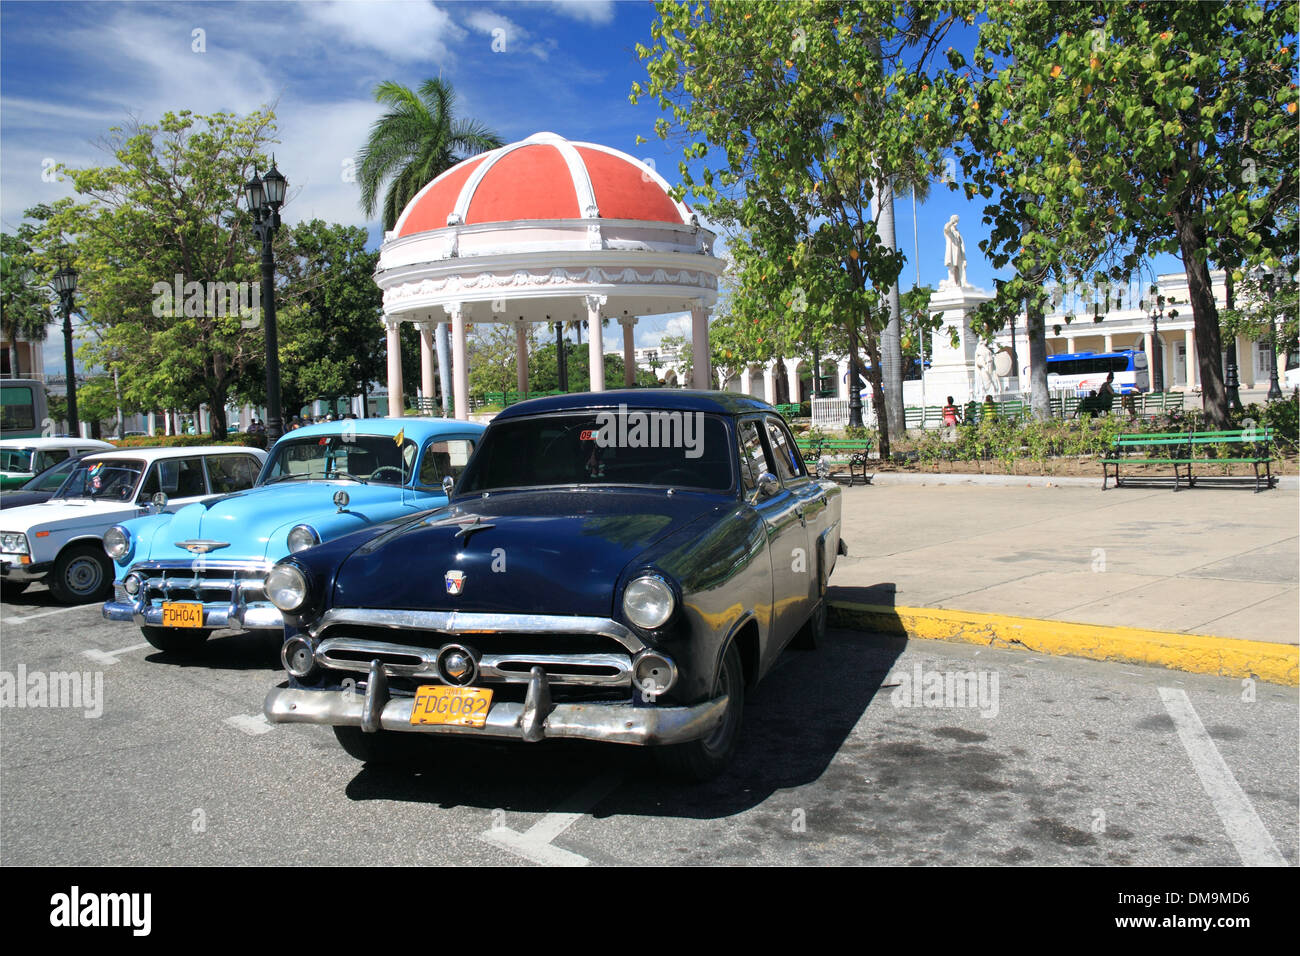 1952 Ford Mainline (1953 Chevy derrière), Parque José Martí, Cienfuegos, Cienfuegos province, à Cuba, mer des Caraïbes, l'Amérique centrale Banque D'Images